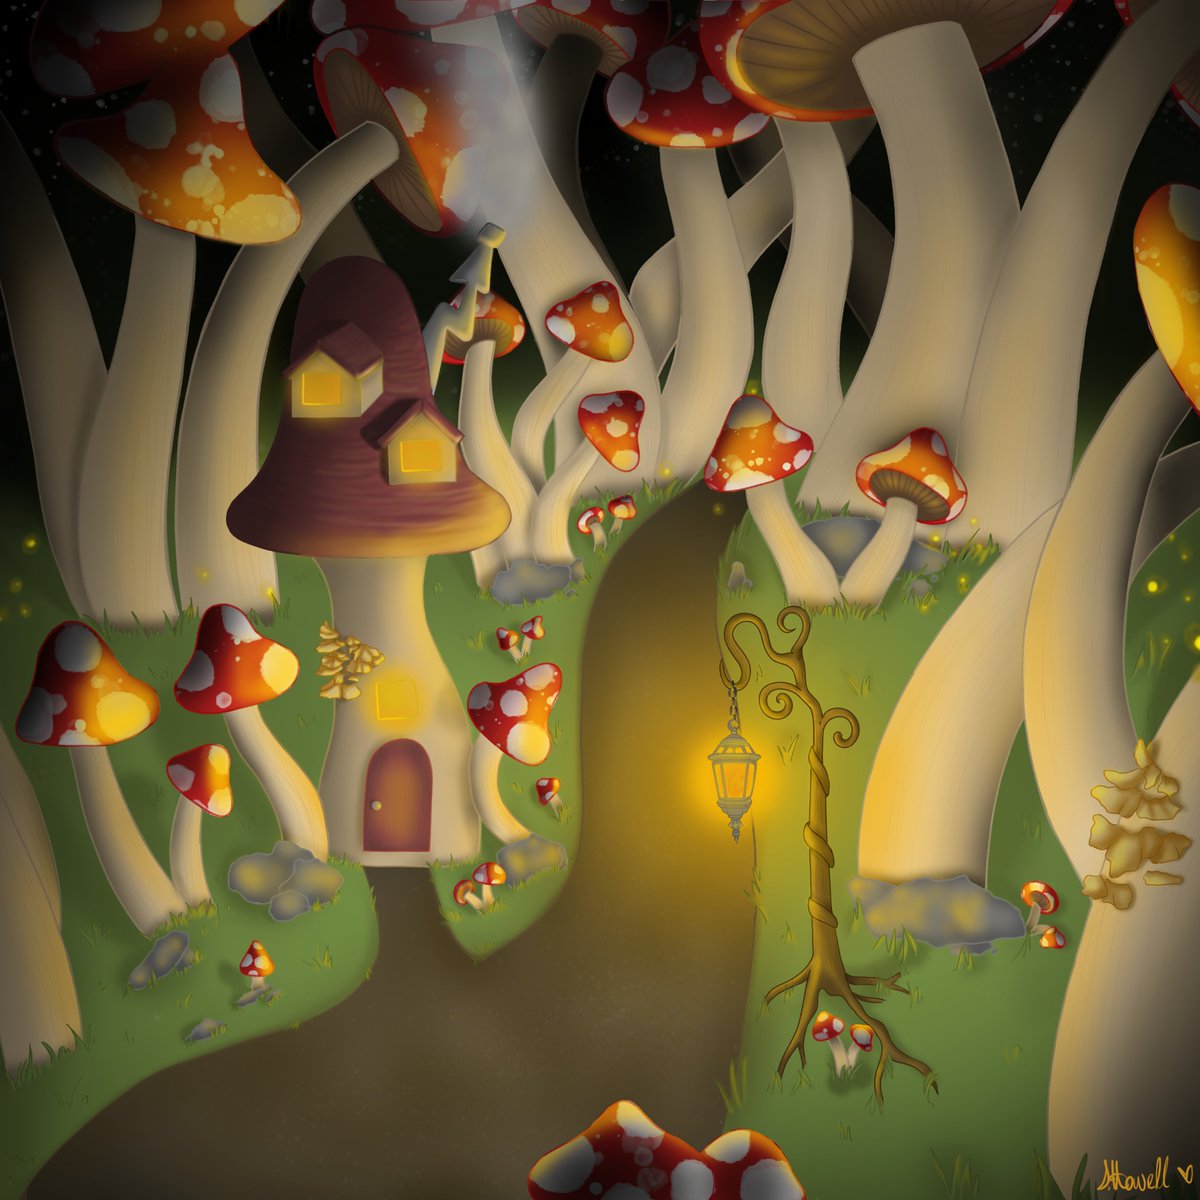 🍄 Need I say more?

#mushroom #mushroomhunting #fantasy #art #mushroomart #fireflies #mushroomhouse #cottage #cottagecore #lights #lantern #painting #drawing #mystic #BLM #vote #forest #mushroomforest #cozy #sketch